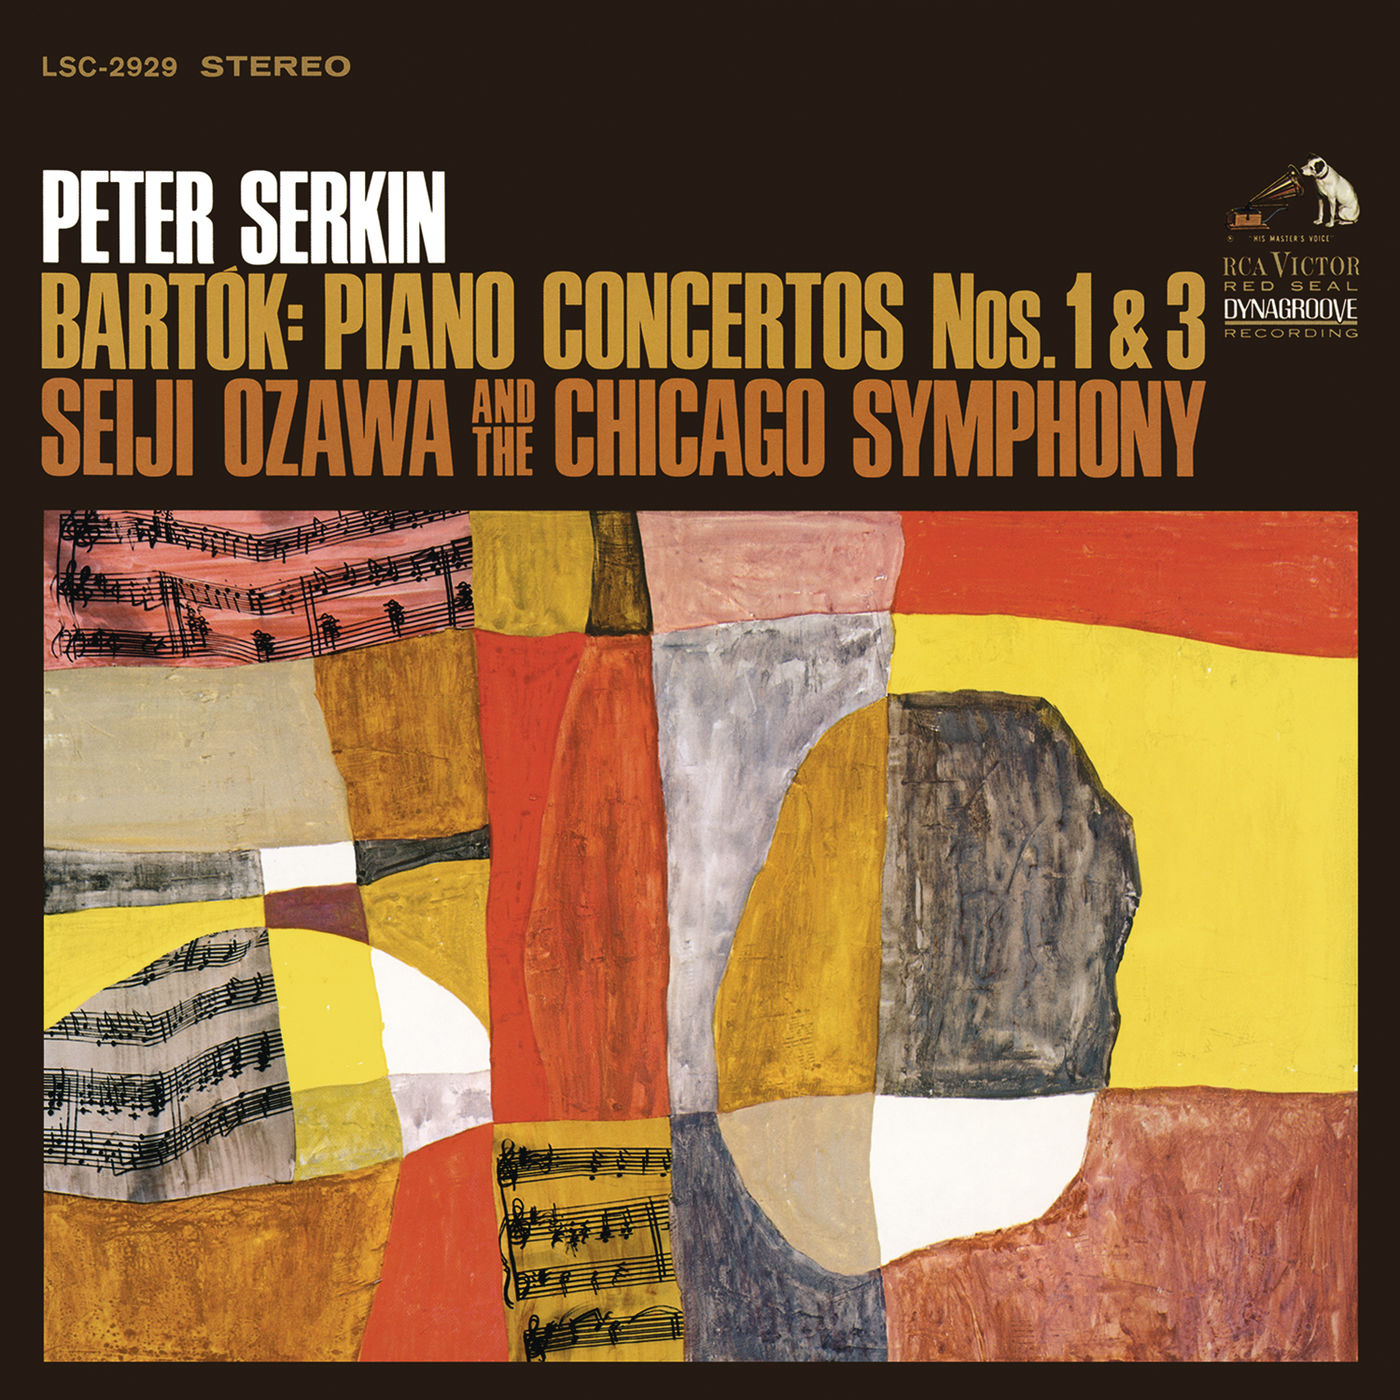 Seiji Ozawa – Bartók- Piano Concertos No. 1 & No. 3